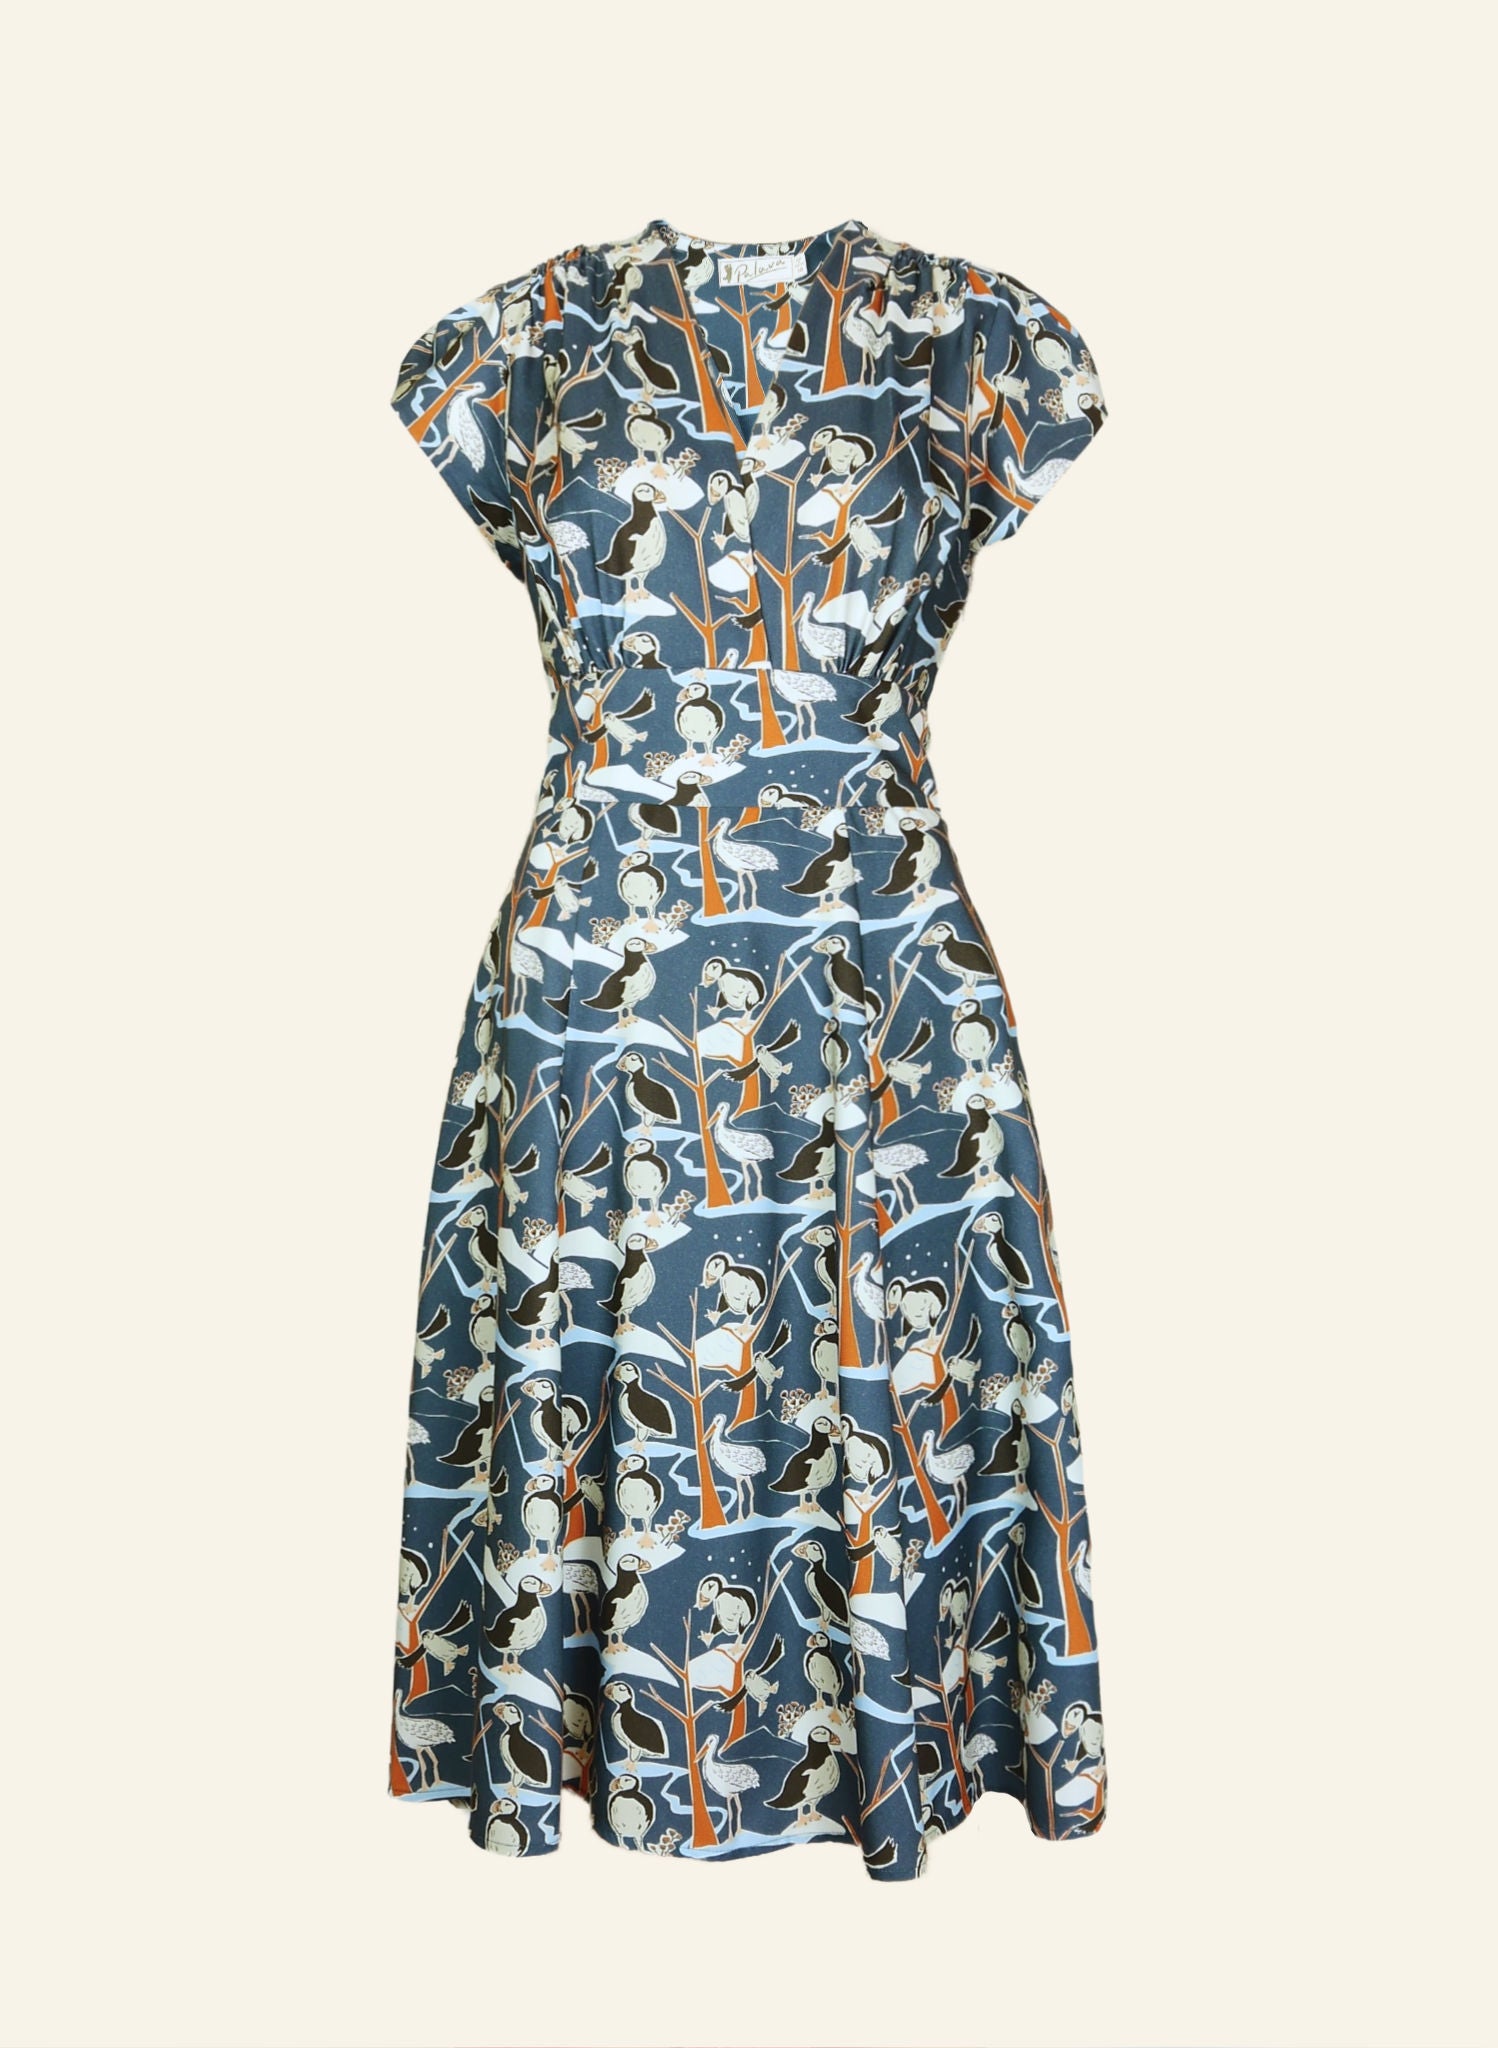 Rita - Blue Puffins Dress